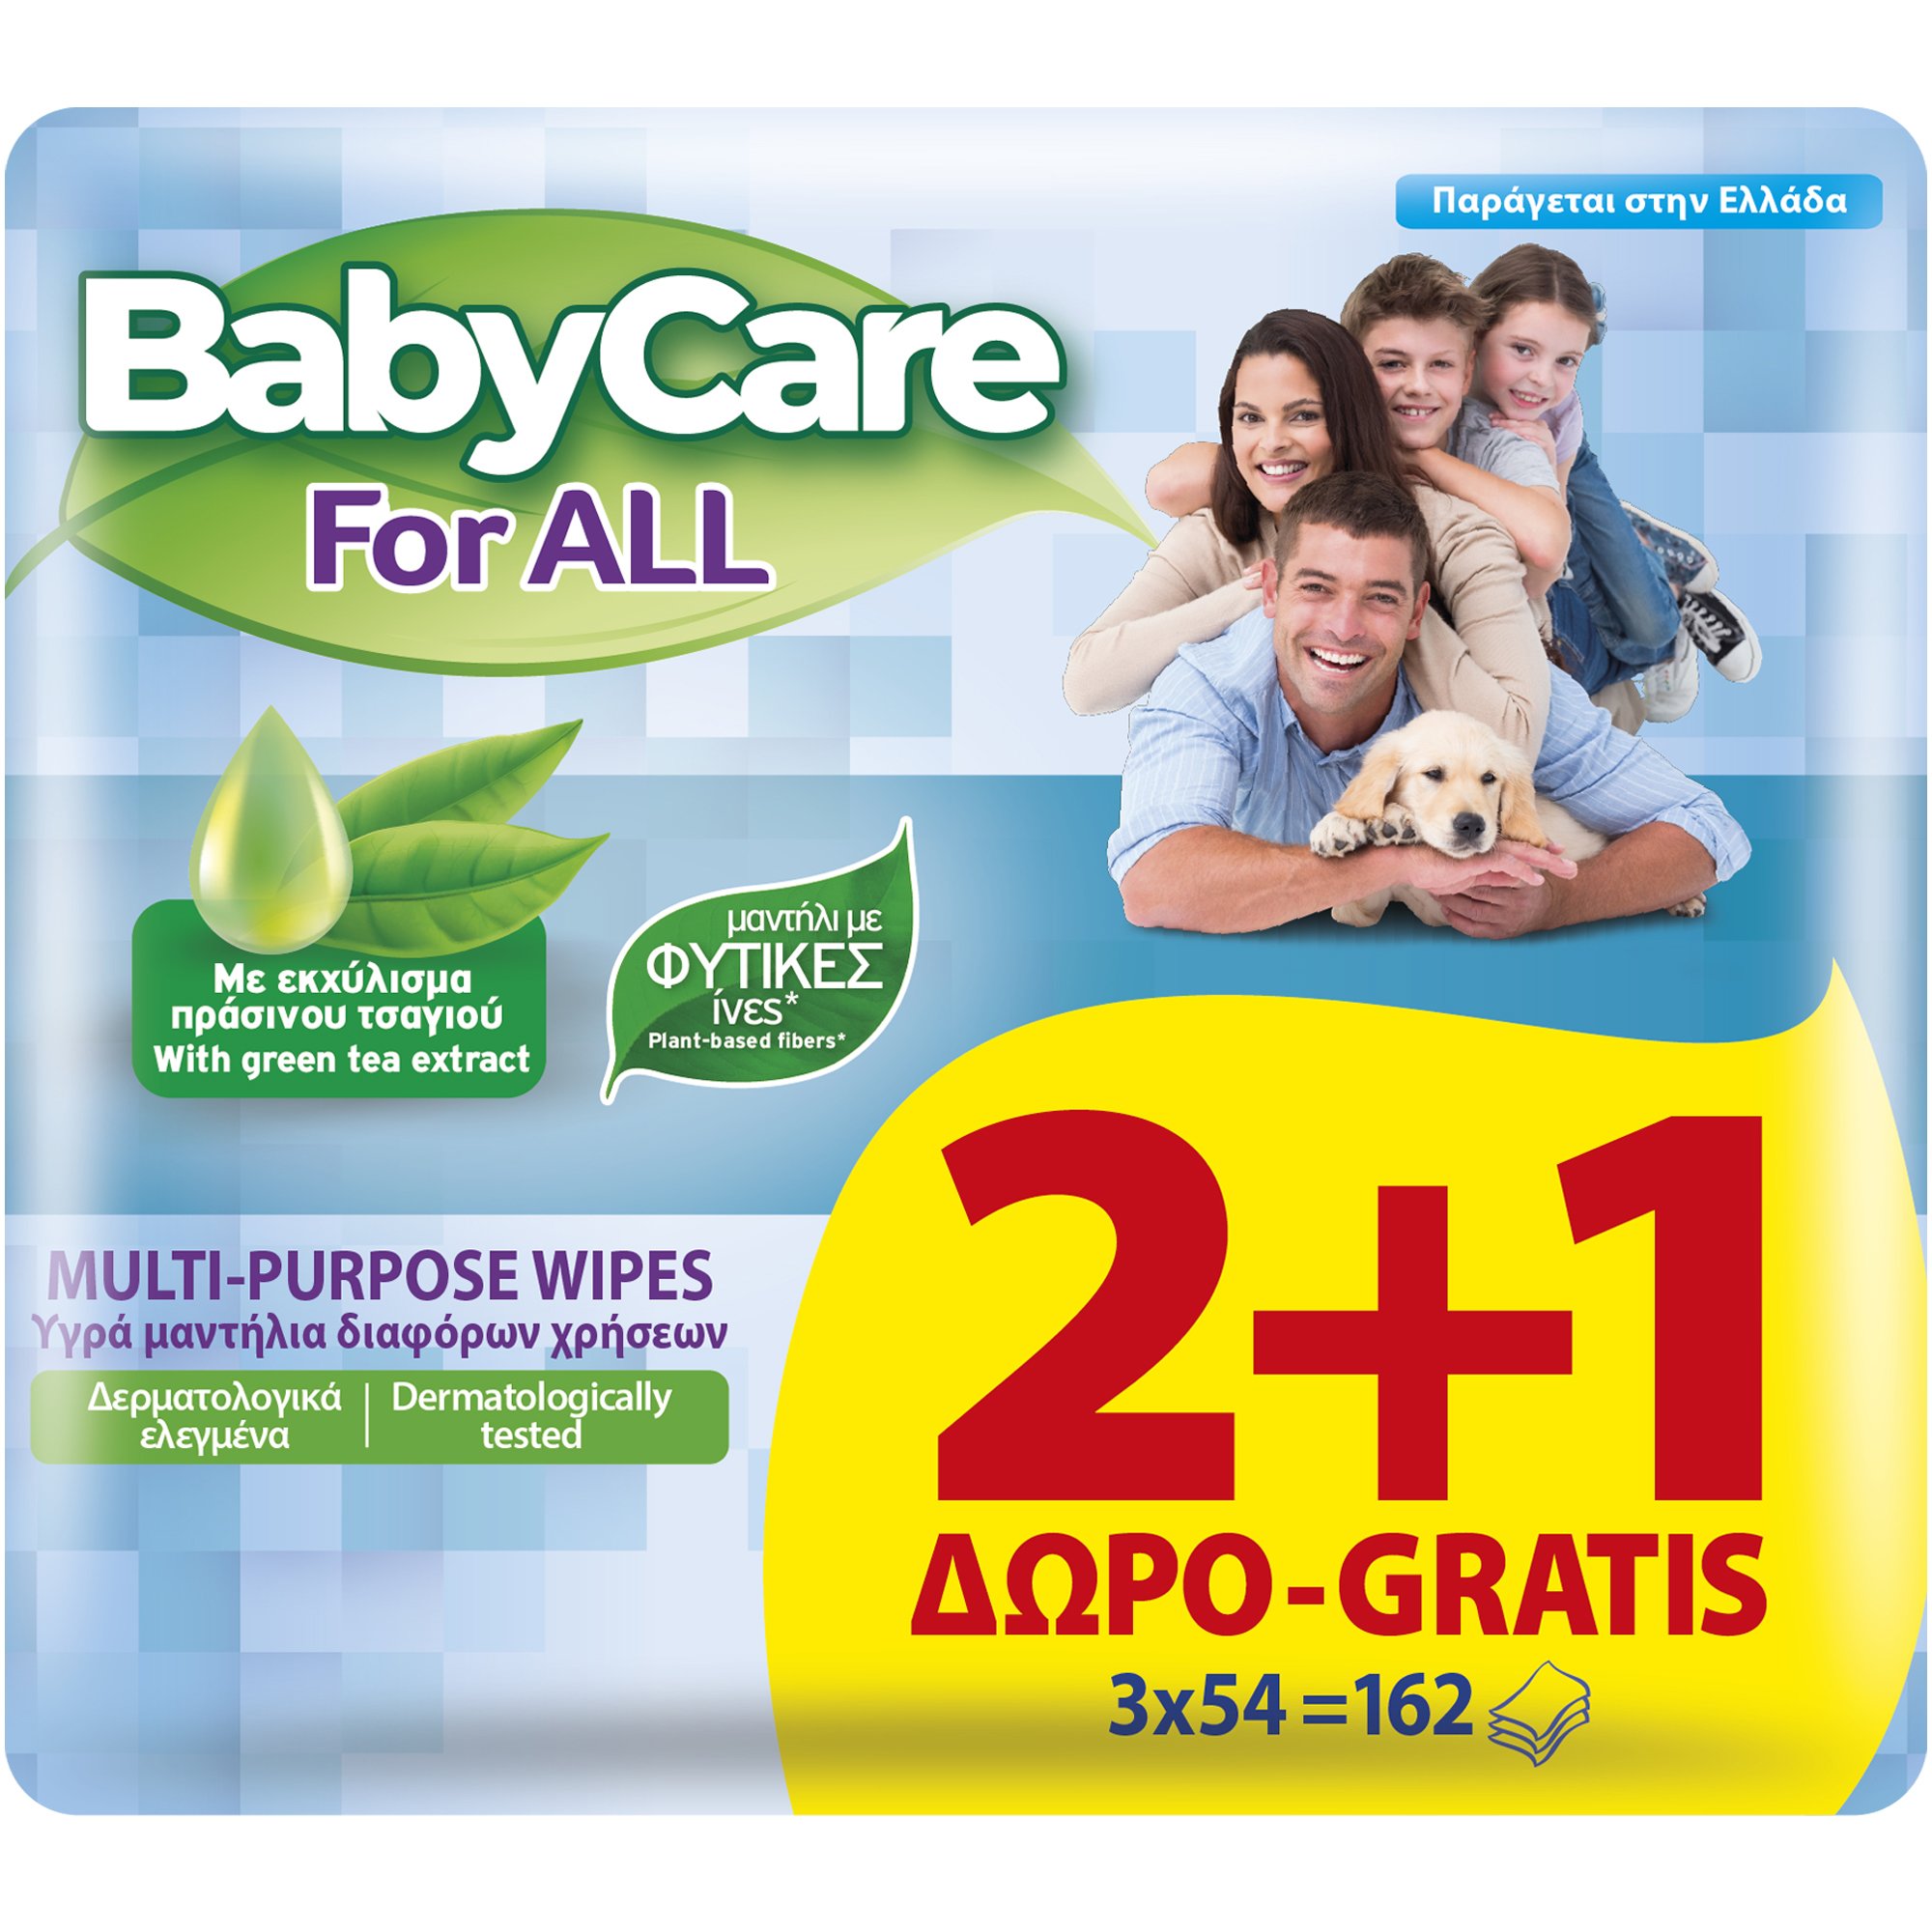 Εικόνα από BabyCare For All Multi-Purpose Wipes Υγρά Μαντηλάκια Διαφόρων Χρήσεων με Εκχύλισμα Πράσινου Τσαγιού για Όλη την Οικογένεια 2+1 Δώρο, 162 Τεμάχια (3x54 Τεμάχια)